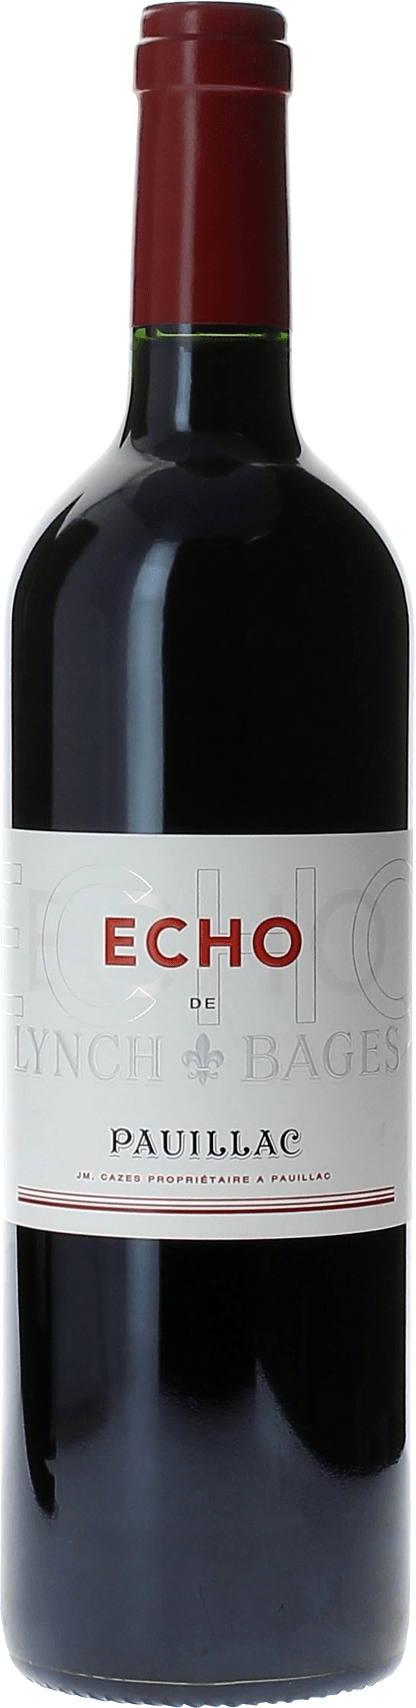 Echo lynch bages 2014 2me vin de LYNCH BAGES Pauillac, Bordeaux rouge